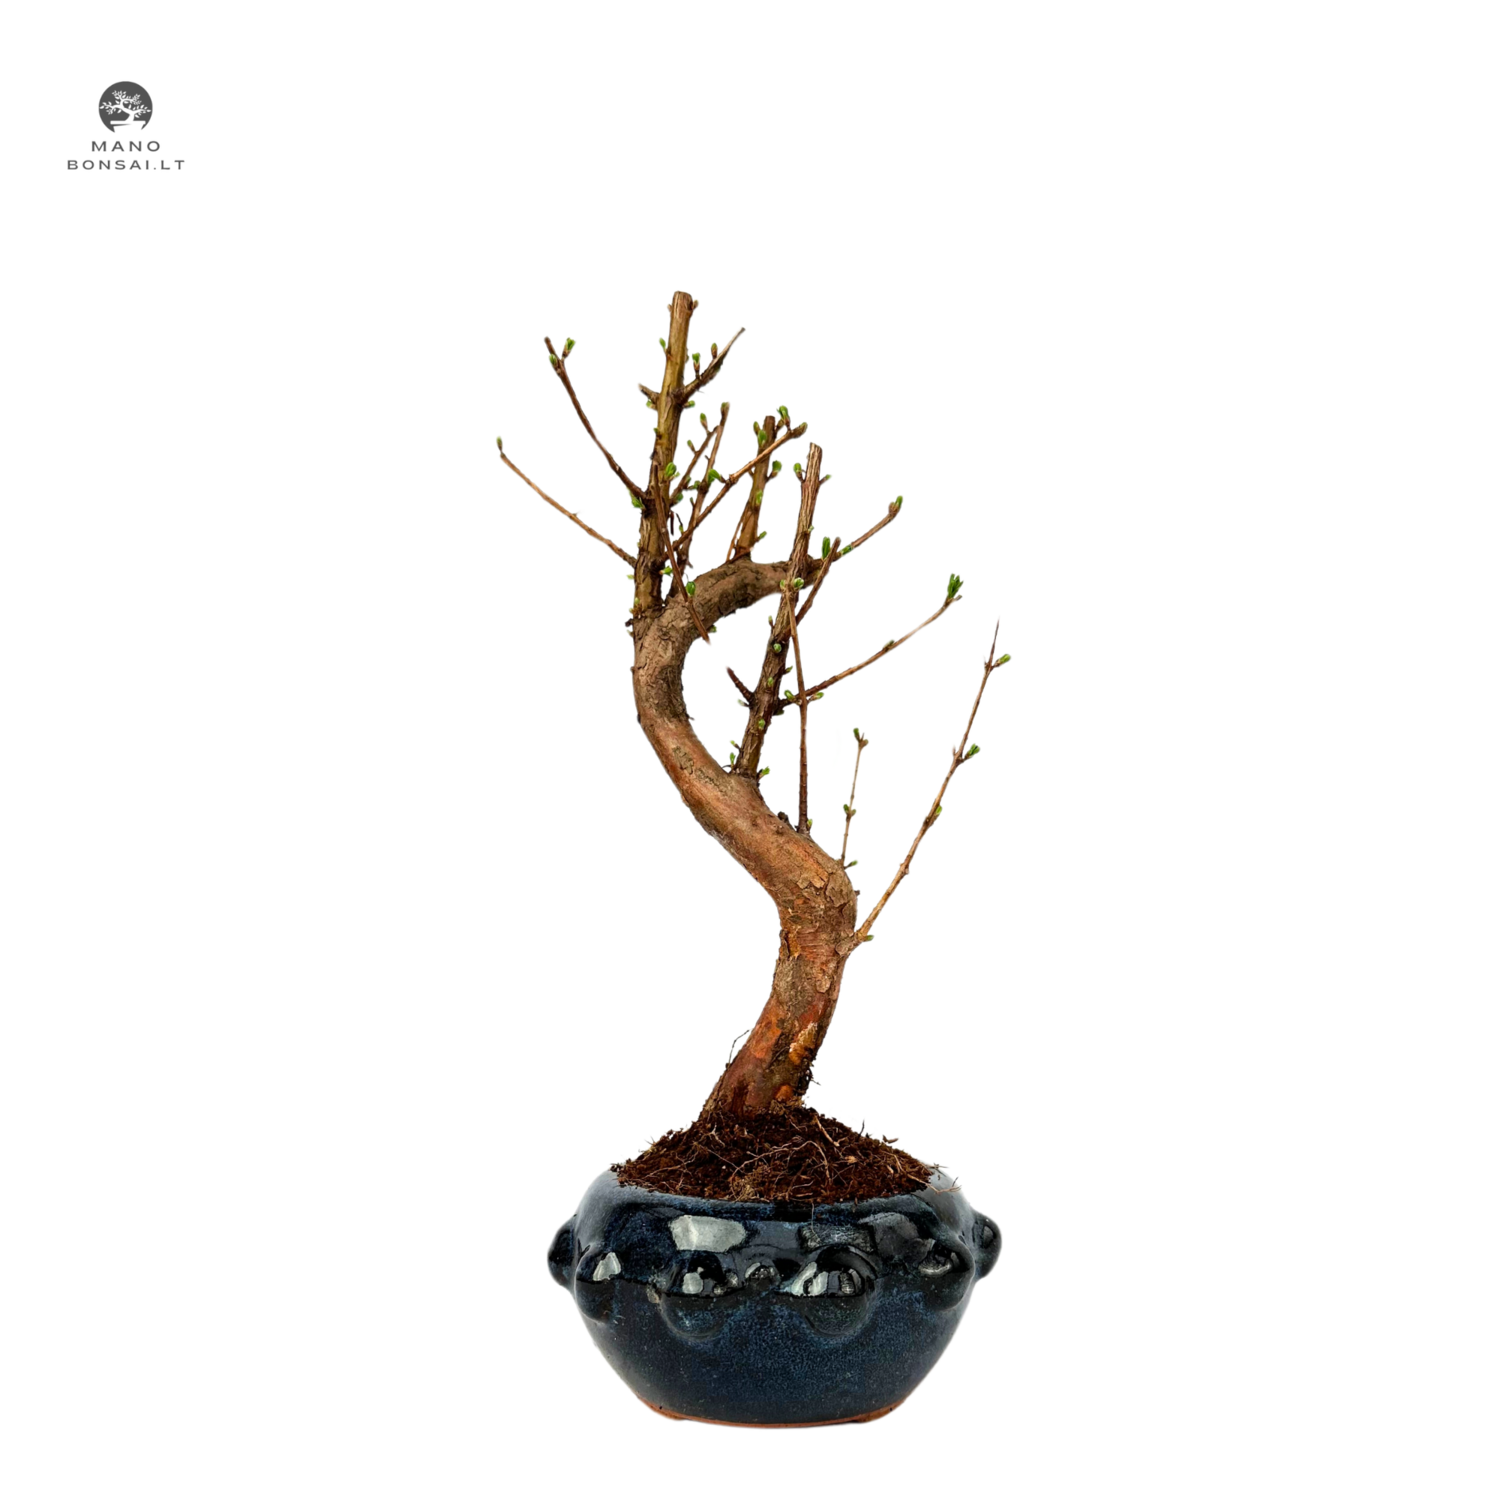 Metasequoia bonsai P13